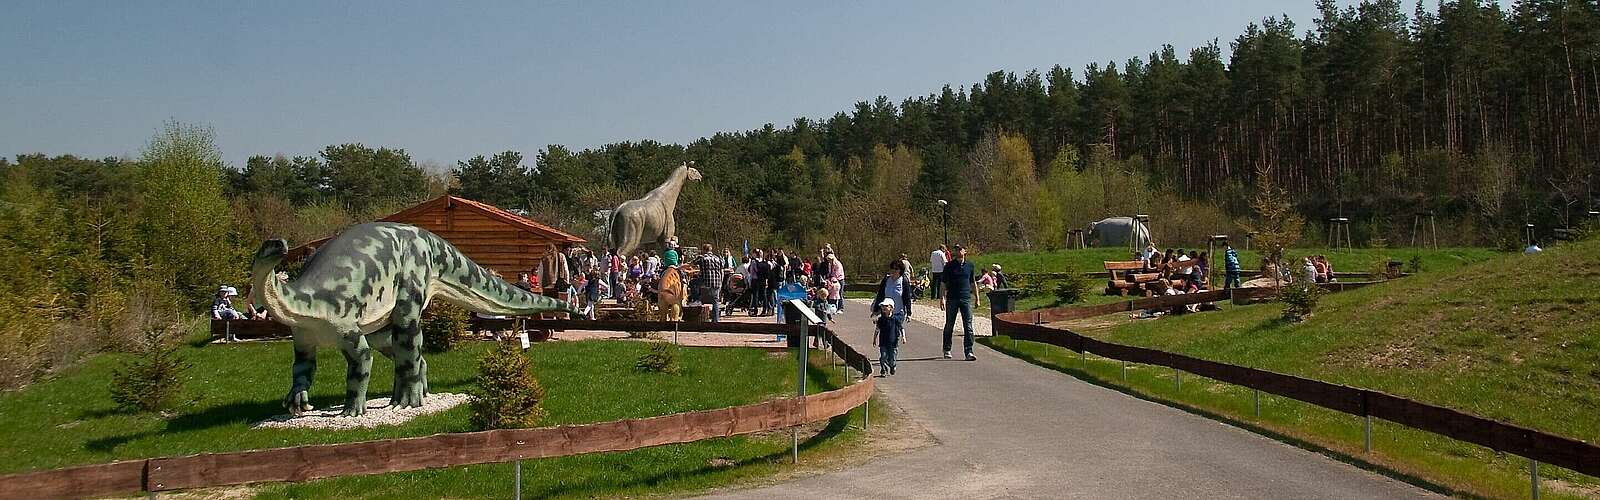 Besucher im Dinosaurierpark Germendorf,
        
    

        Foto: CHICKENONSPEED/Kein Urheber bekannt